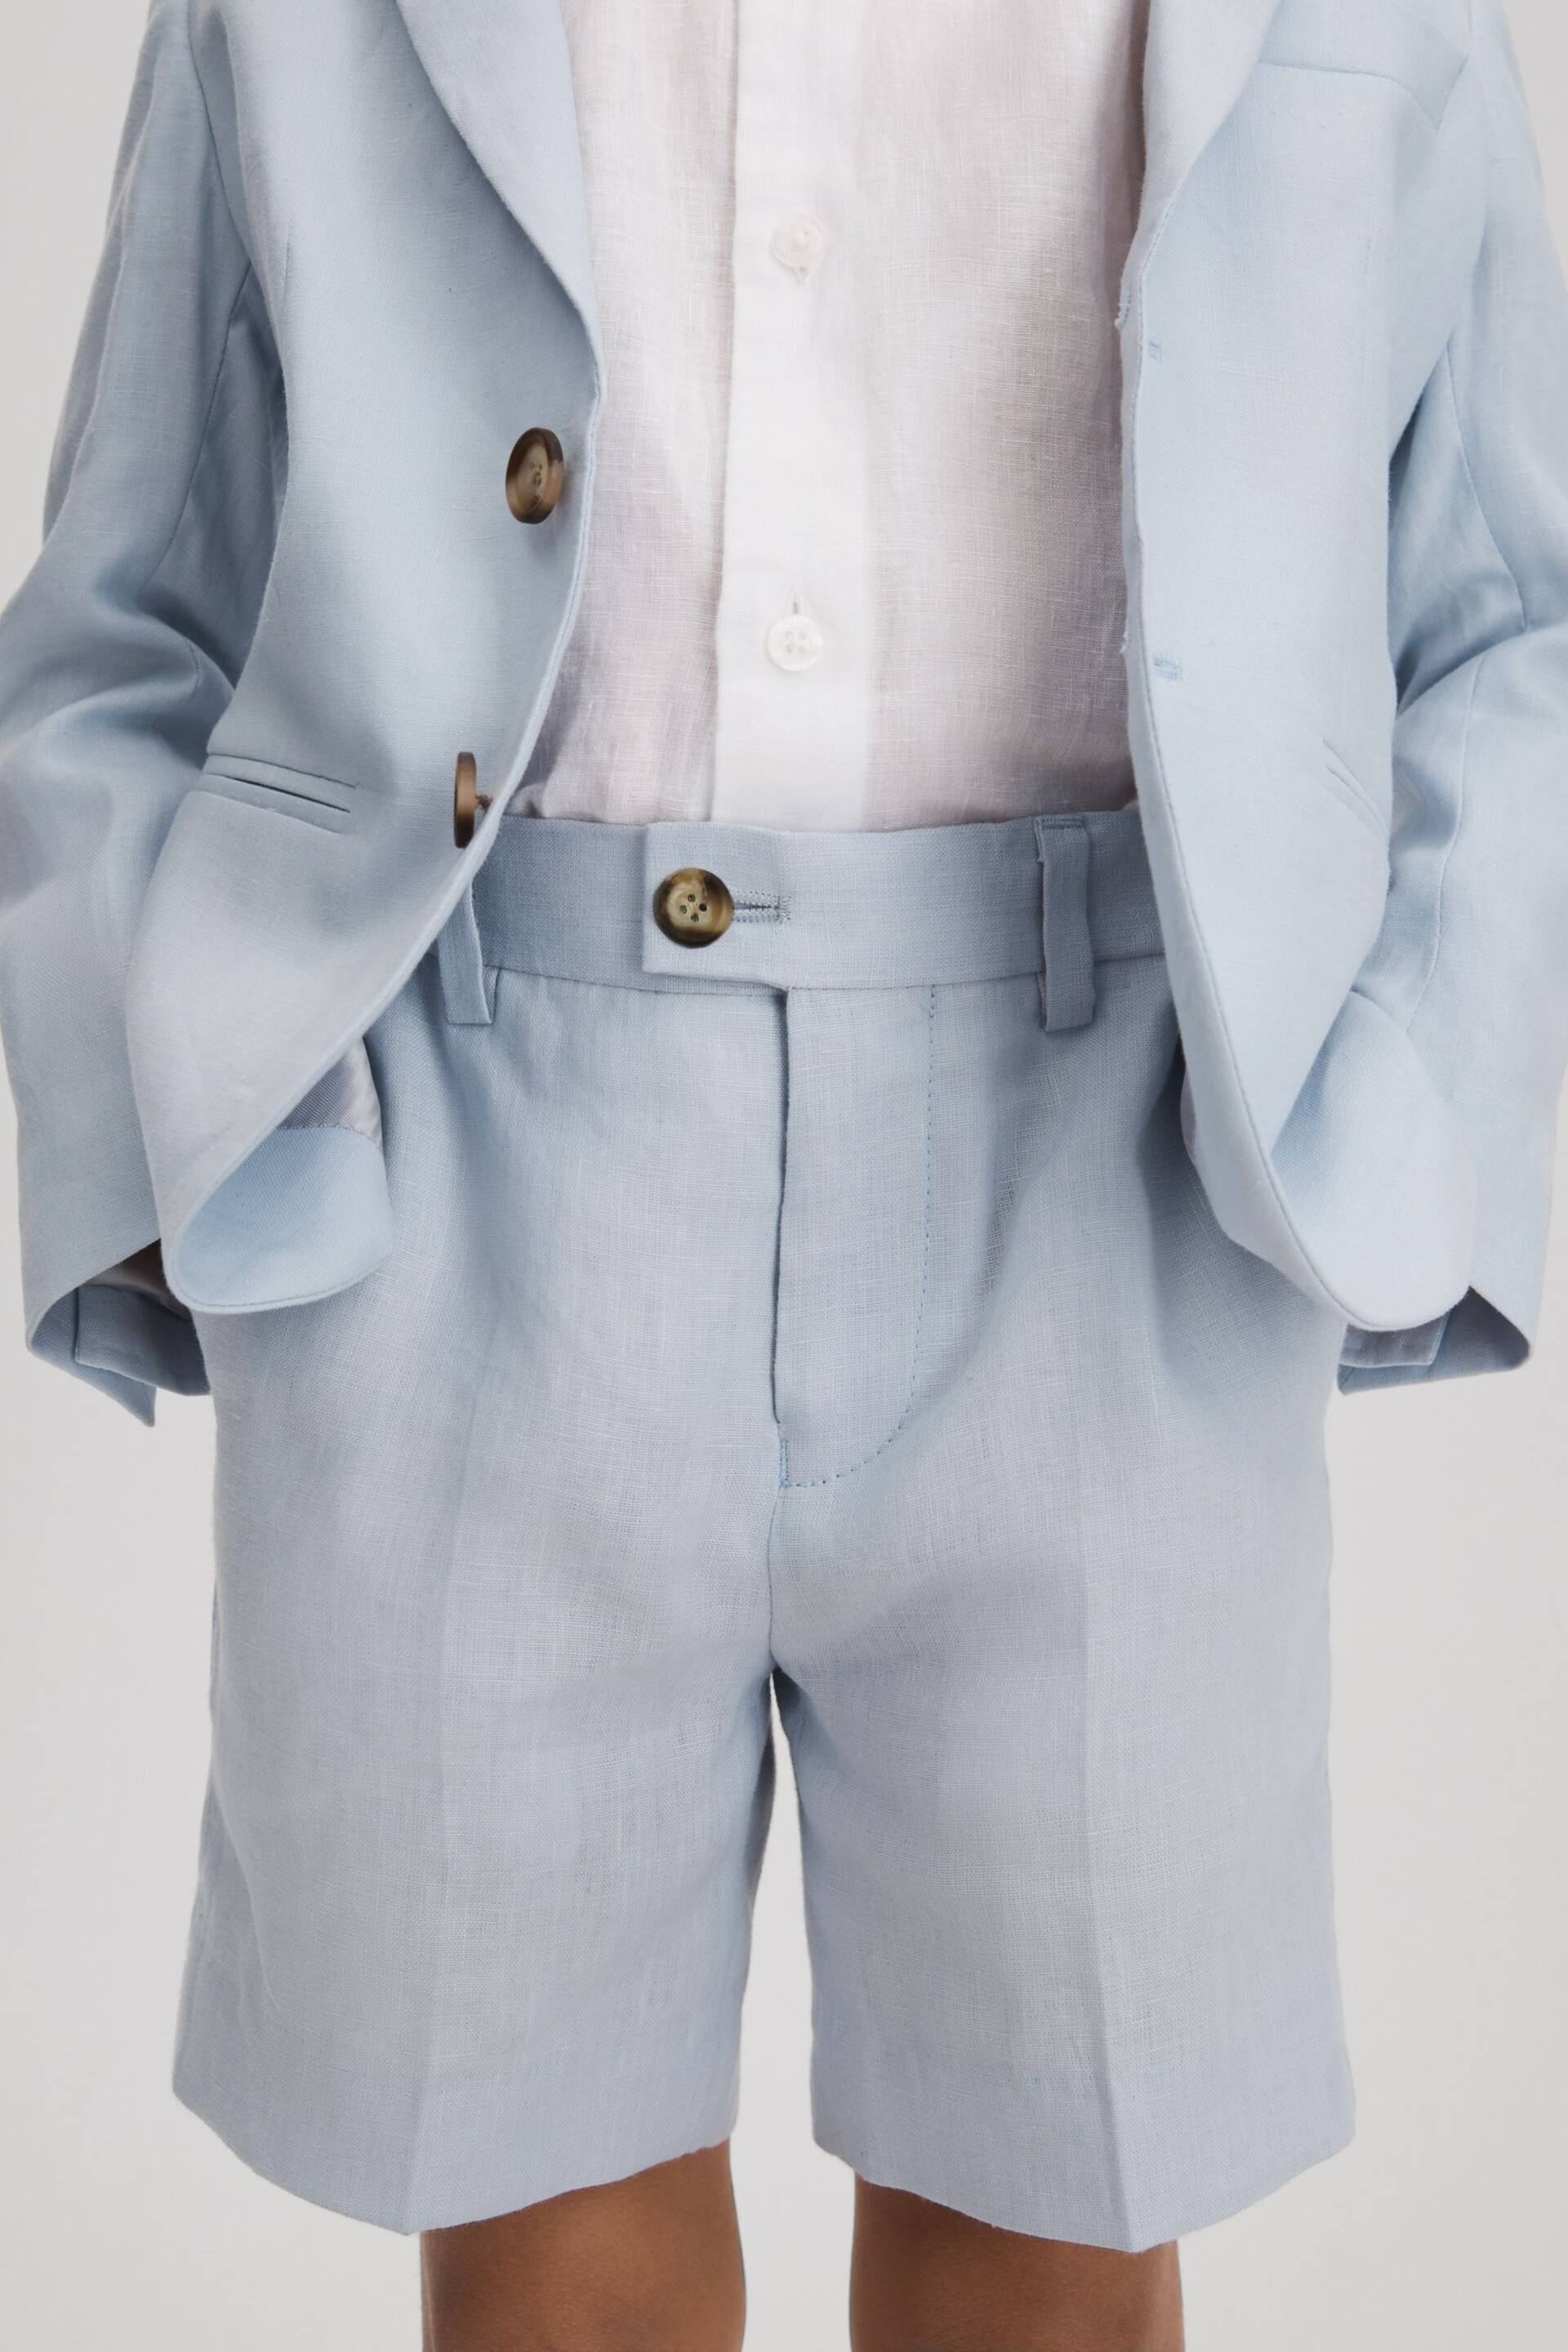 Reiss Soft Blue Kin Senior Slim Fit Linen Adjustable Shorts - Image 3 of 4